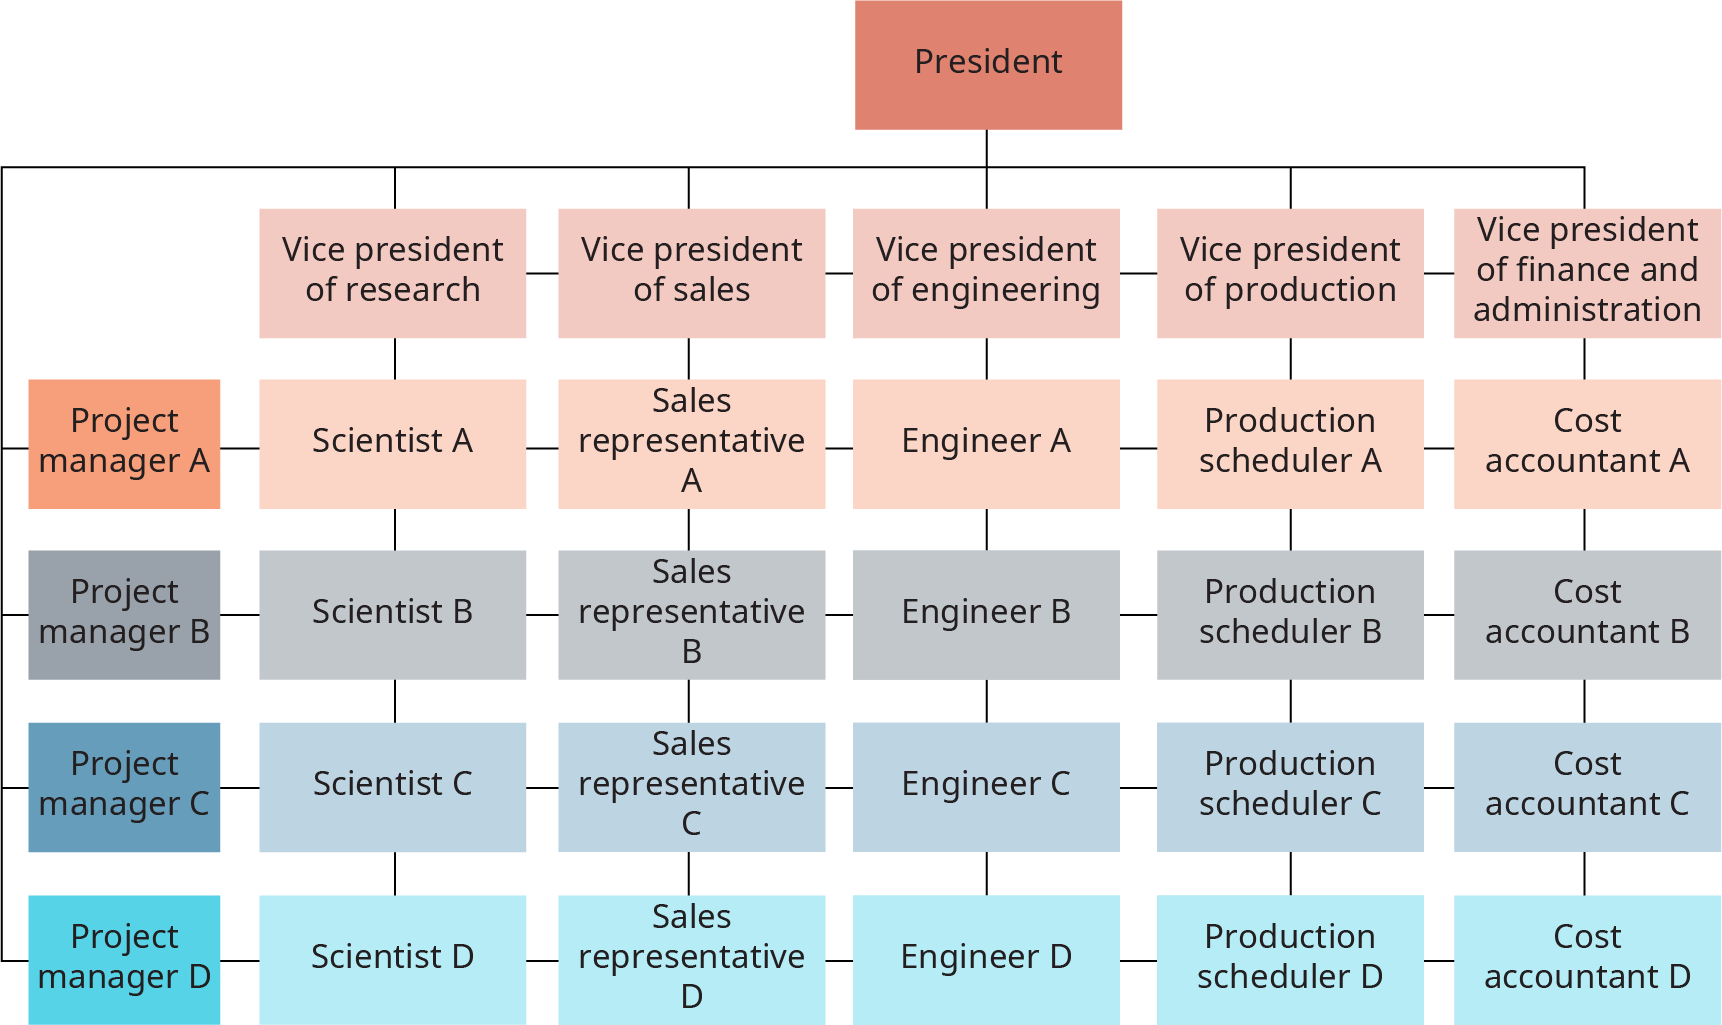 矩阵由 5 列和 4 行组成。 矩阵的顶部是总统；总统的线条延伸到每列和每行。 这些行从上到下都标有 “项目经理 A 和项目经理 B”、“项目经理 C” 和 “项目经理 D”。从左到右，这些列分别标记为研究副总裁兼销售副总裁、工程副总裁、生产副总裁和副总裁财务和行政总裁。 从左到右，第一行中的单元格显示为：科学家 A 和销售代表 A、工程师 A、生产调度员 A 和成本会计师 A。每行都有相同的结构，科学家在 v p 的研究之下；销售代表低于 v p，工程师 v p生产调度员在生产部的 v p 之下，成本会计师在财务和管理员的 v p 之下。